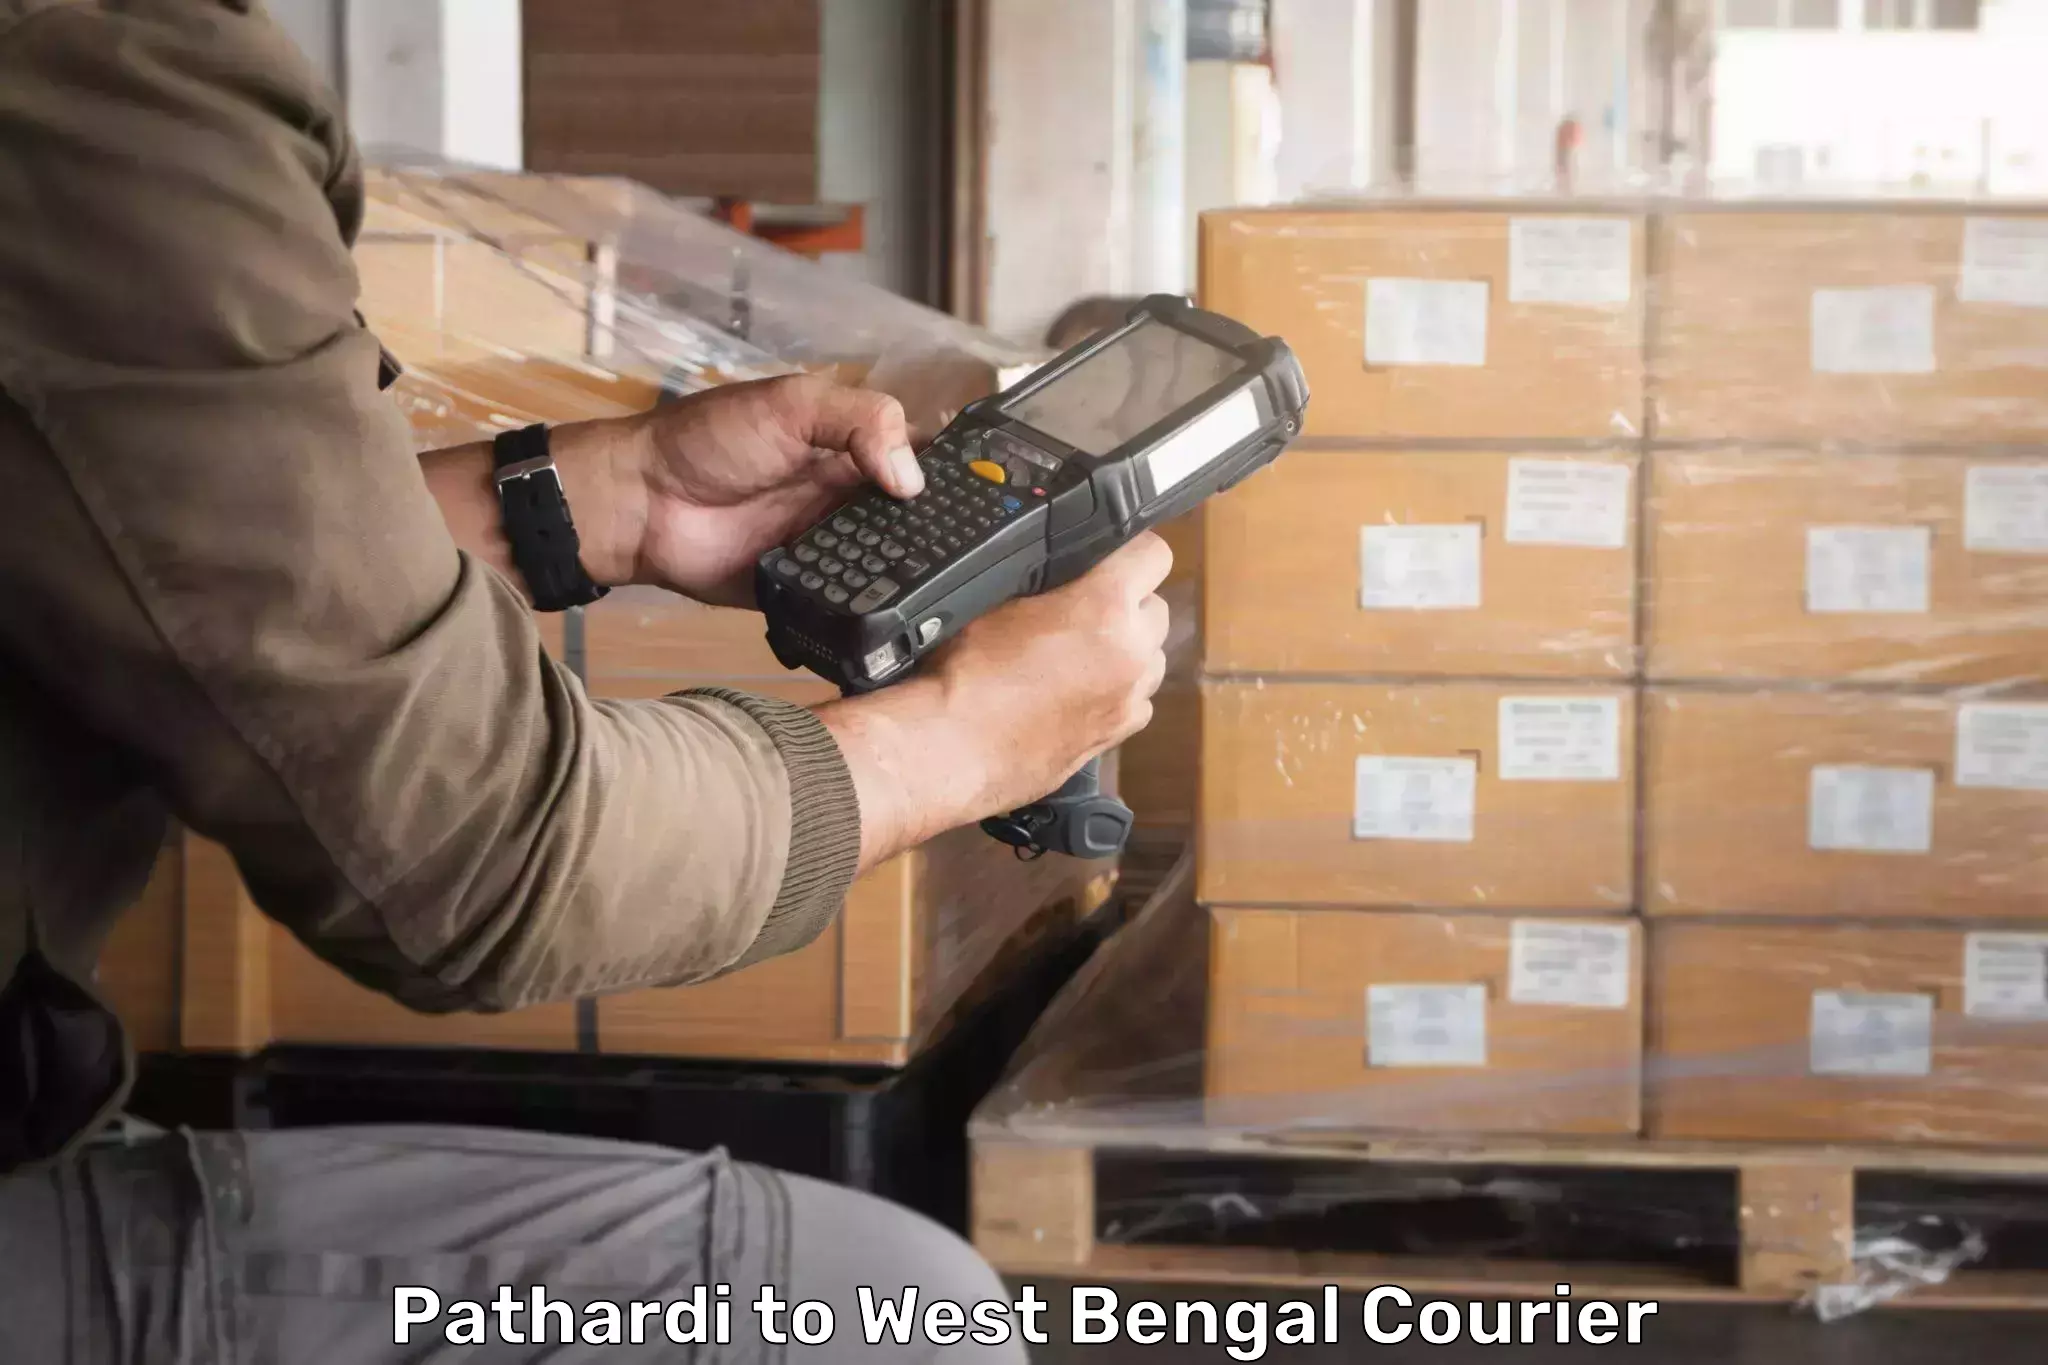 Full-service courier options Pathardi to IIIT Kalyani